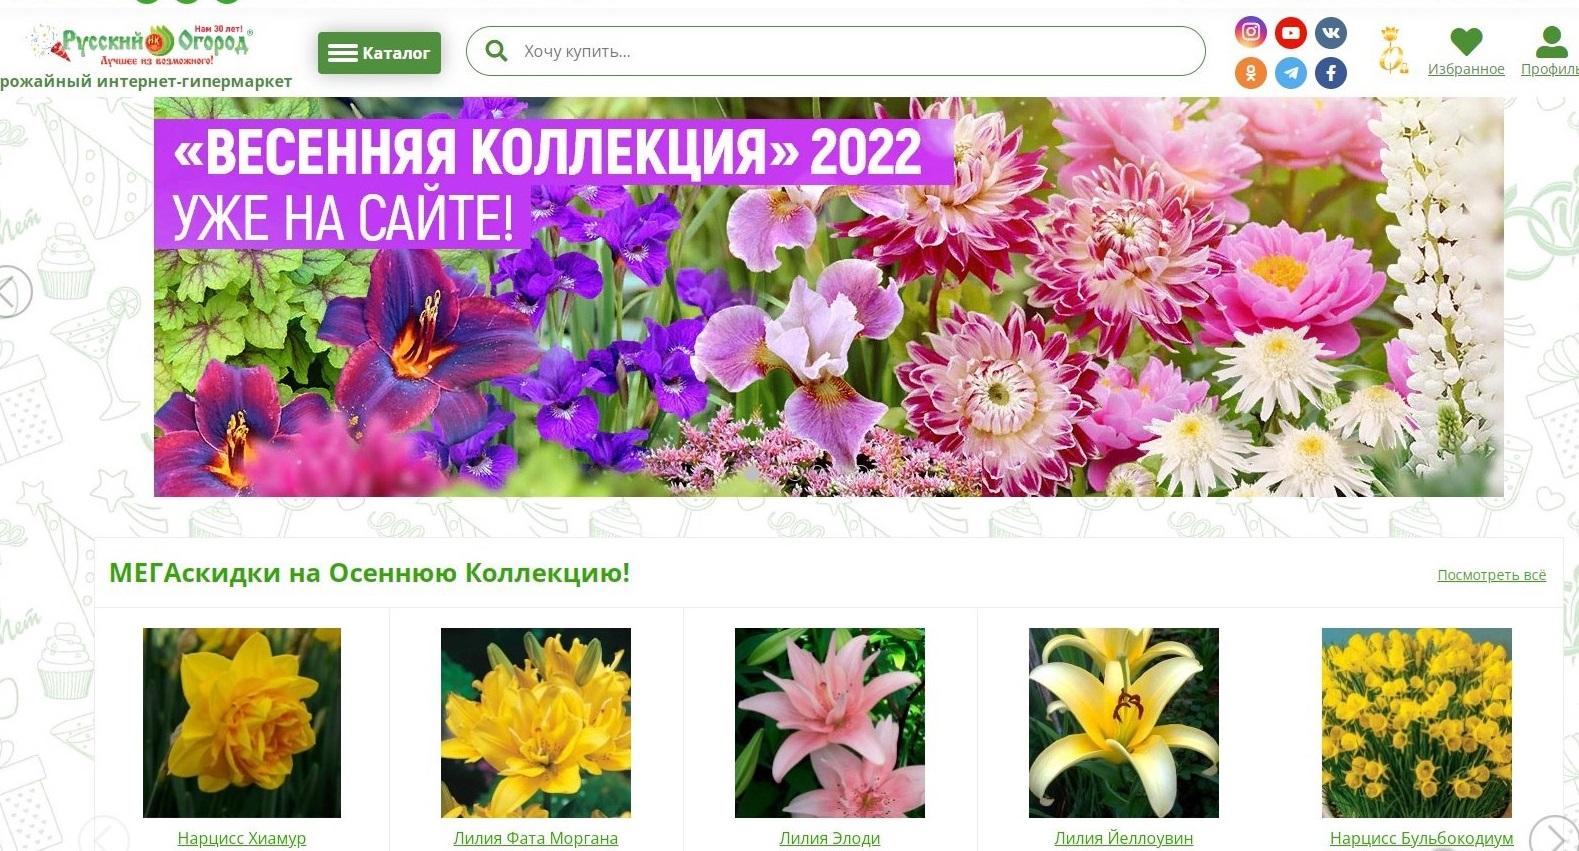 Интернет Магазин Процветок В России